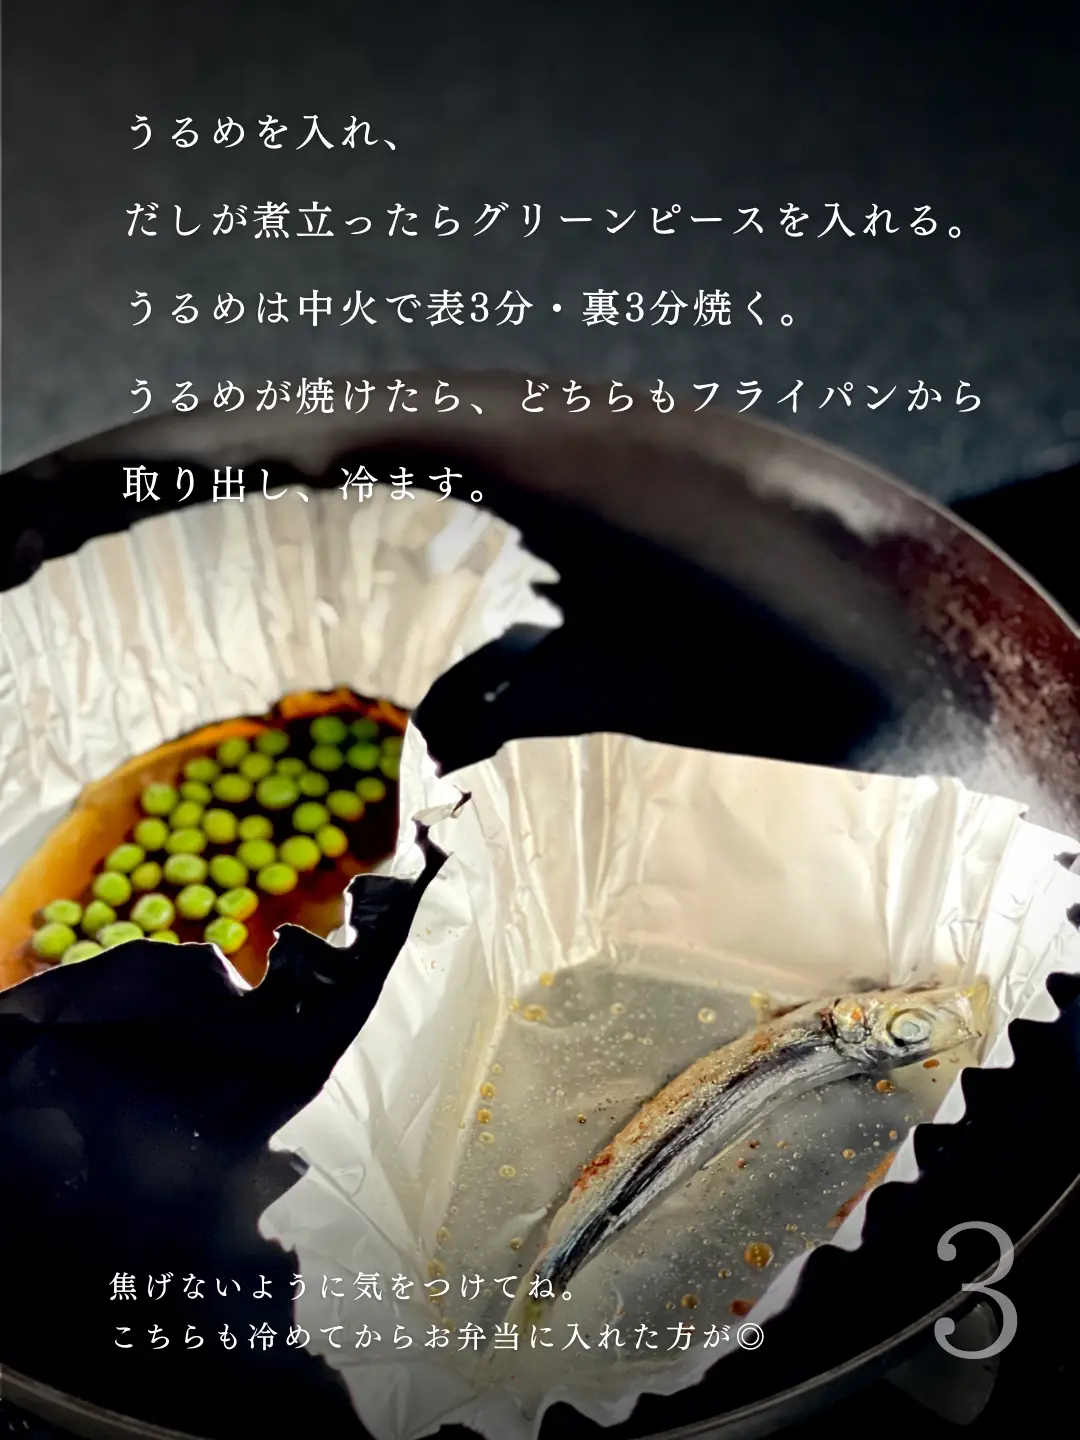 Recipe : Satsuki's Bento from My Neighbor Totoro